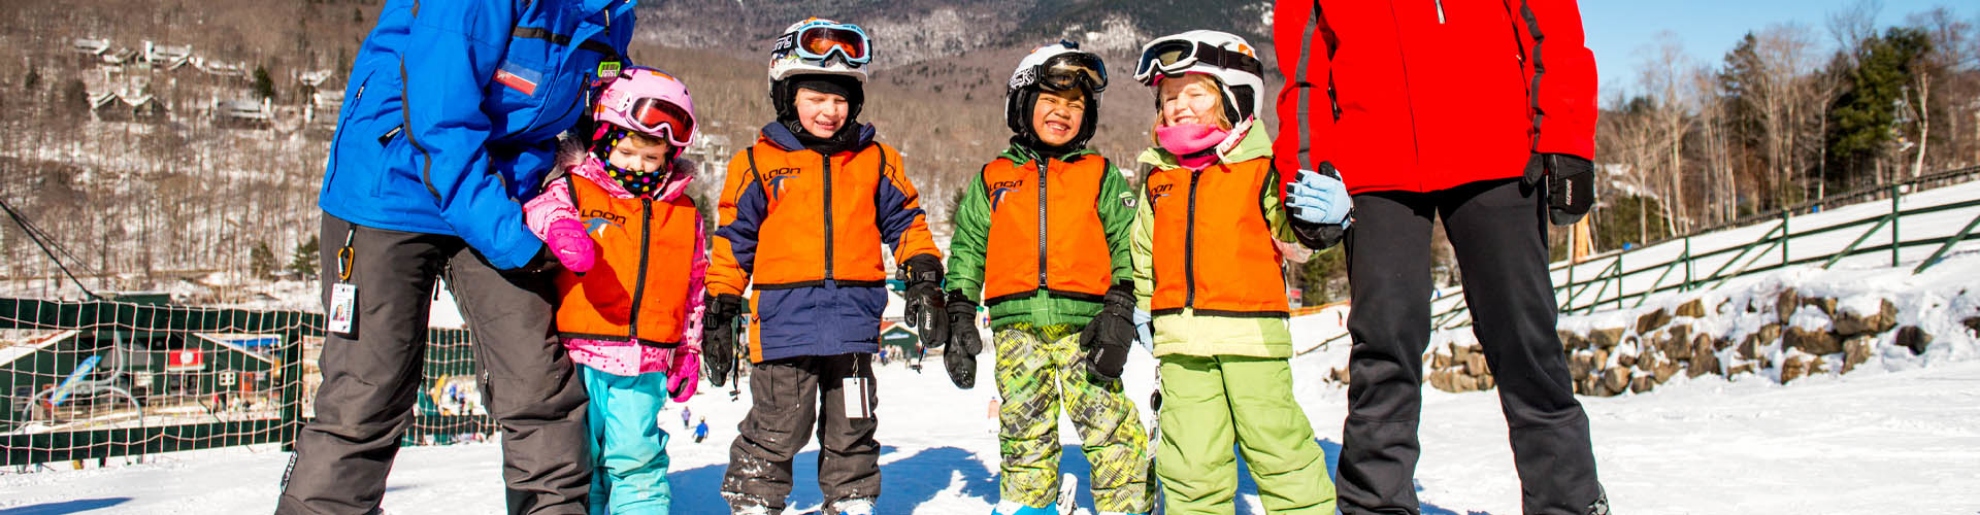 young children in ski lesson